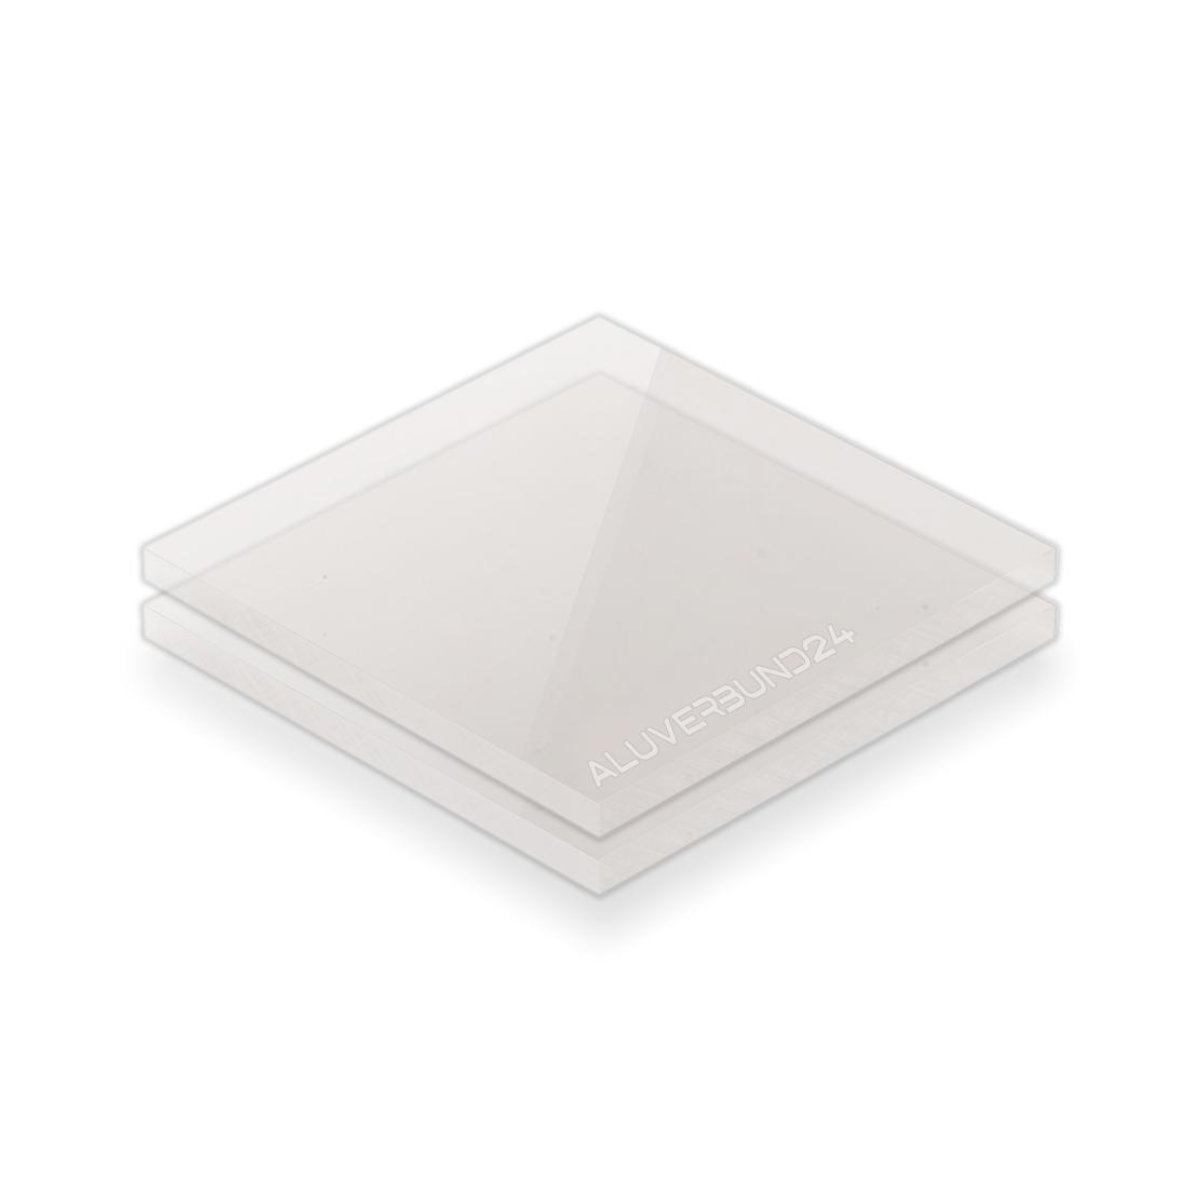 Acrylglas Zuschnitt Opal 30% Lichtduchlässigkeit EX 5mm